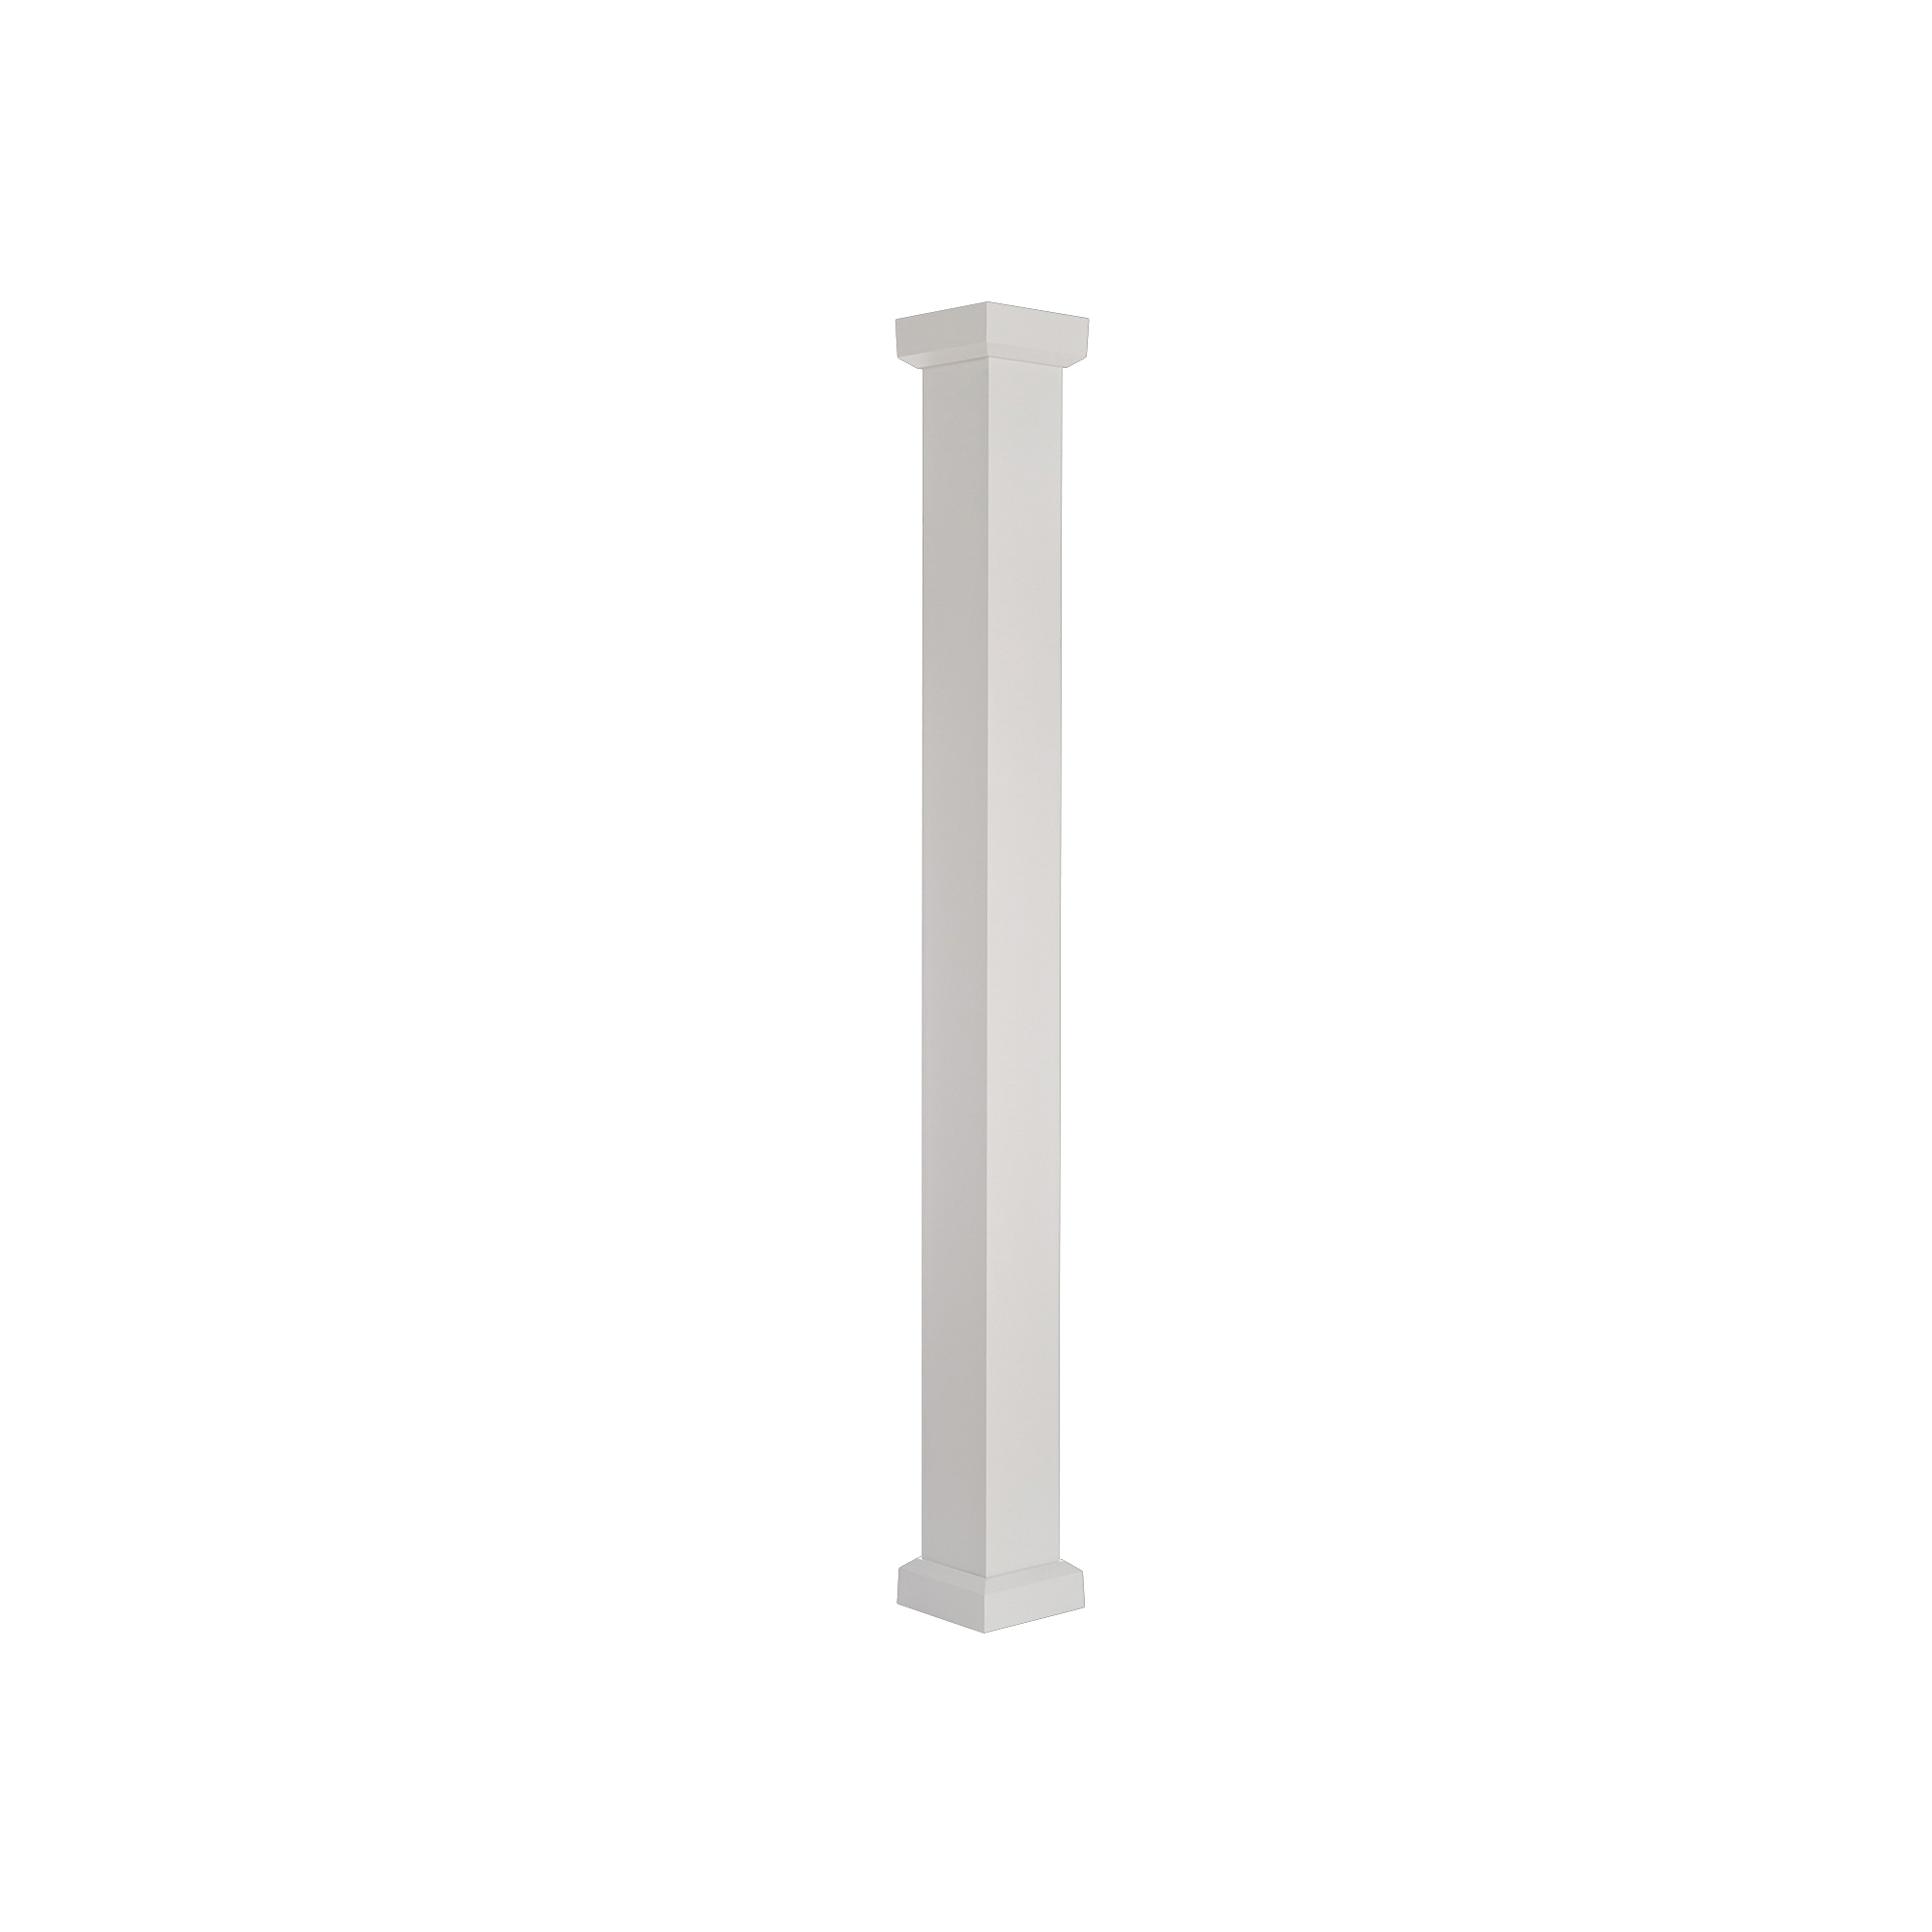 600EC0708 Column, 8 ft H, Square, Aluminum, White